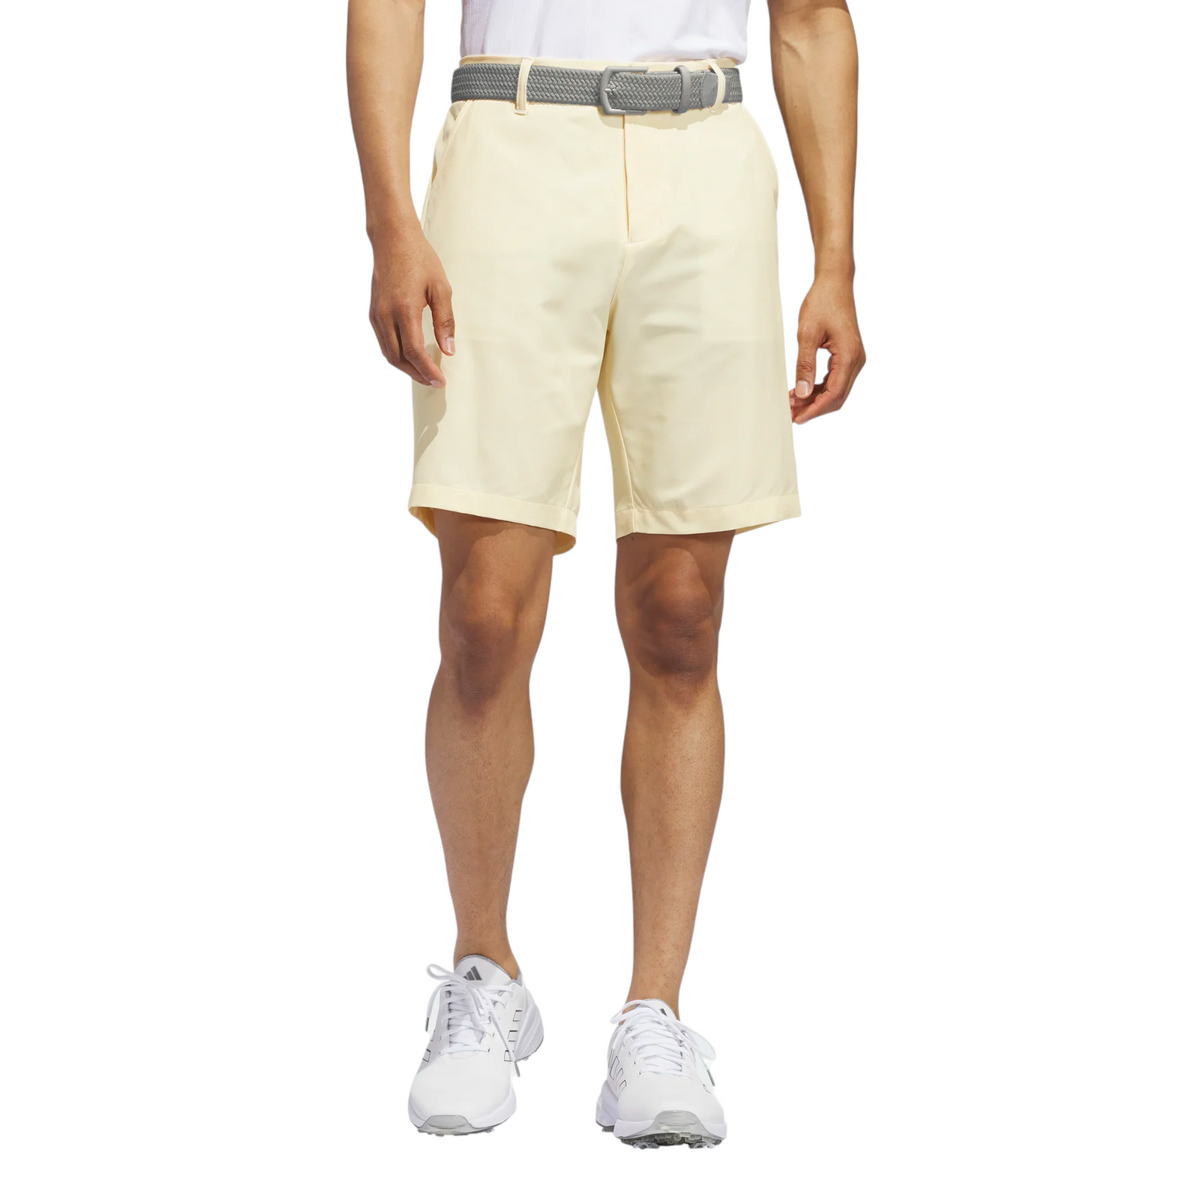 Adidas Ultimate365 Printed Golf Shorts - Mens